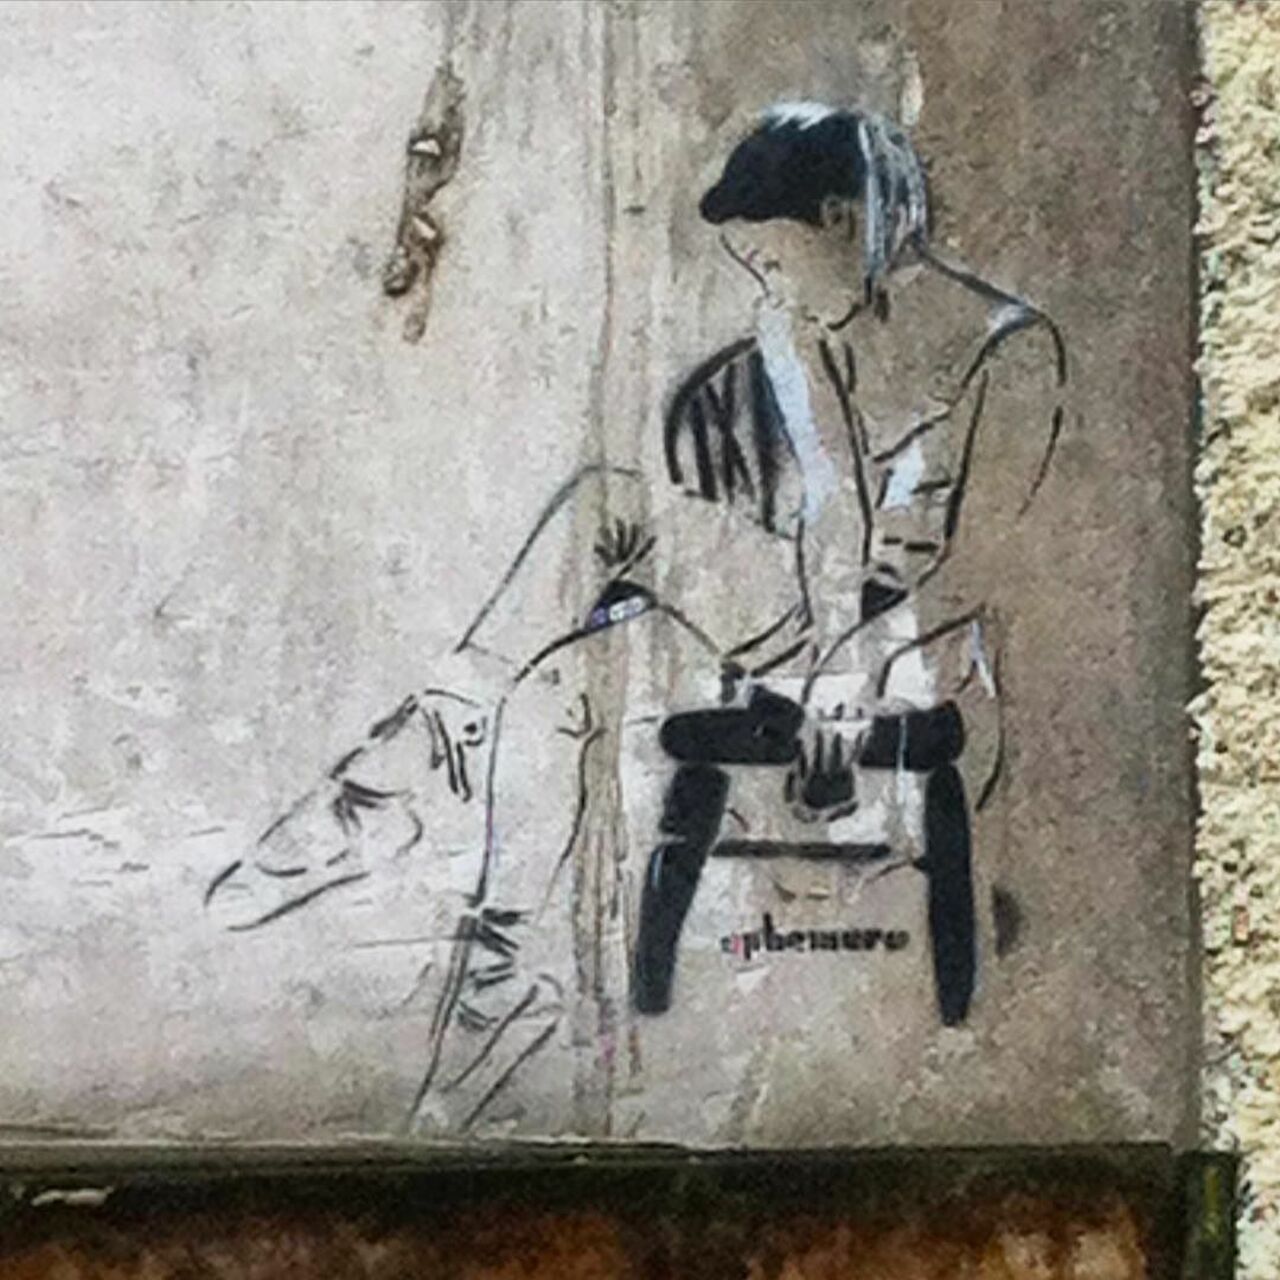 #Paris #graffiti photo by @jeanlucr http://ift.tt/1jUYD3A #StreetArt https://t.co/r7kWNleDrq